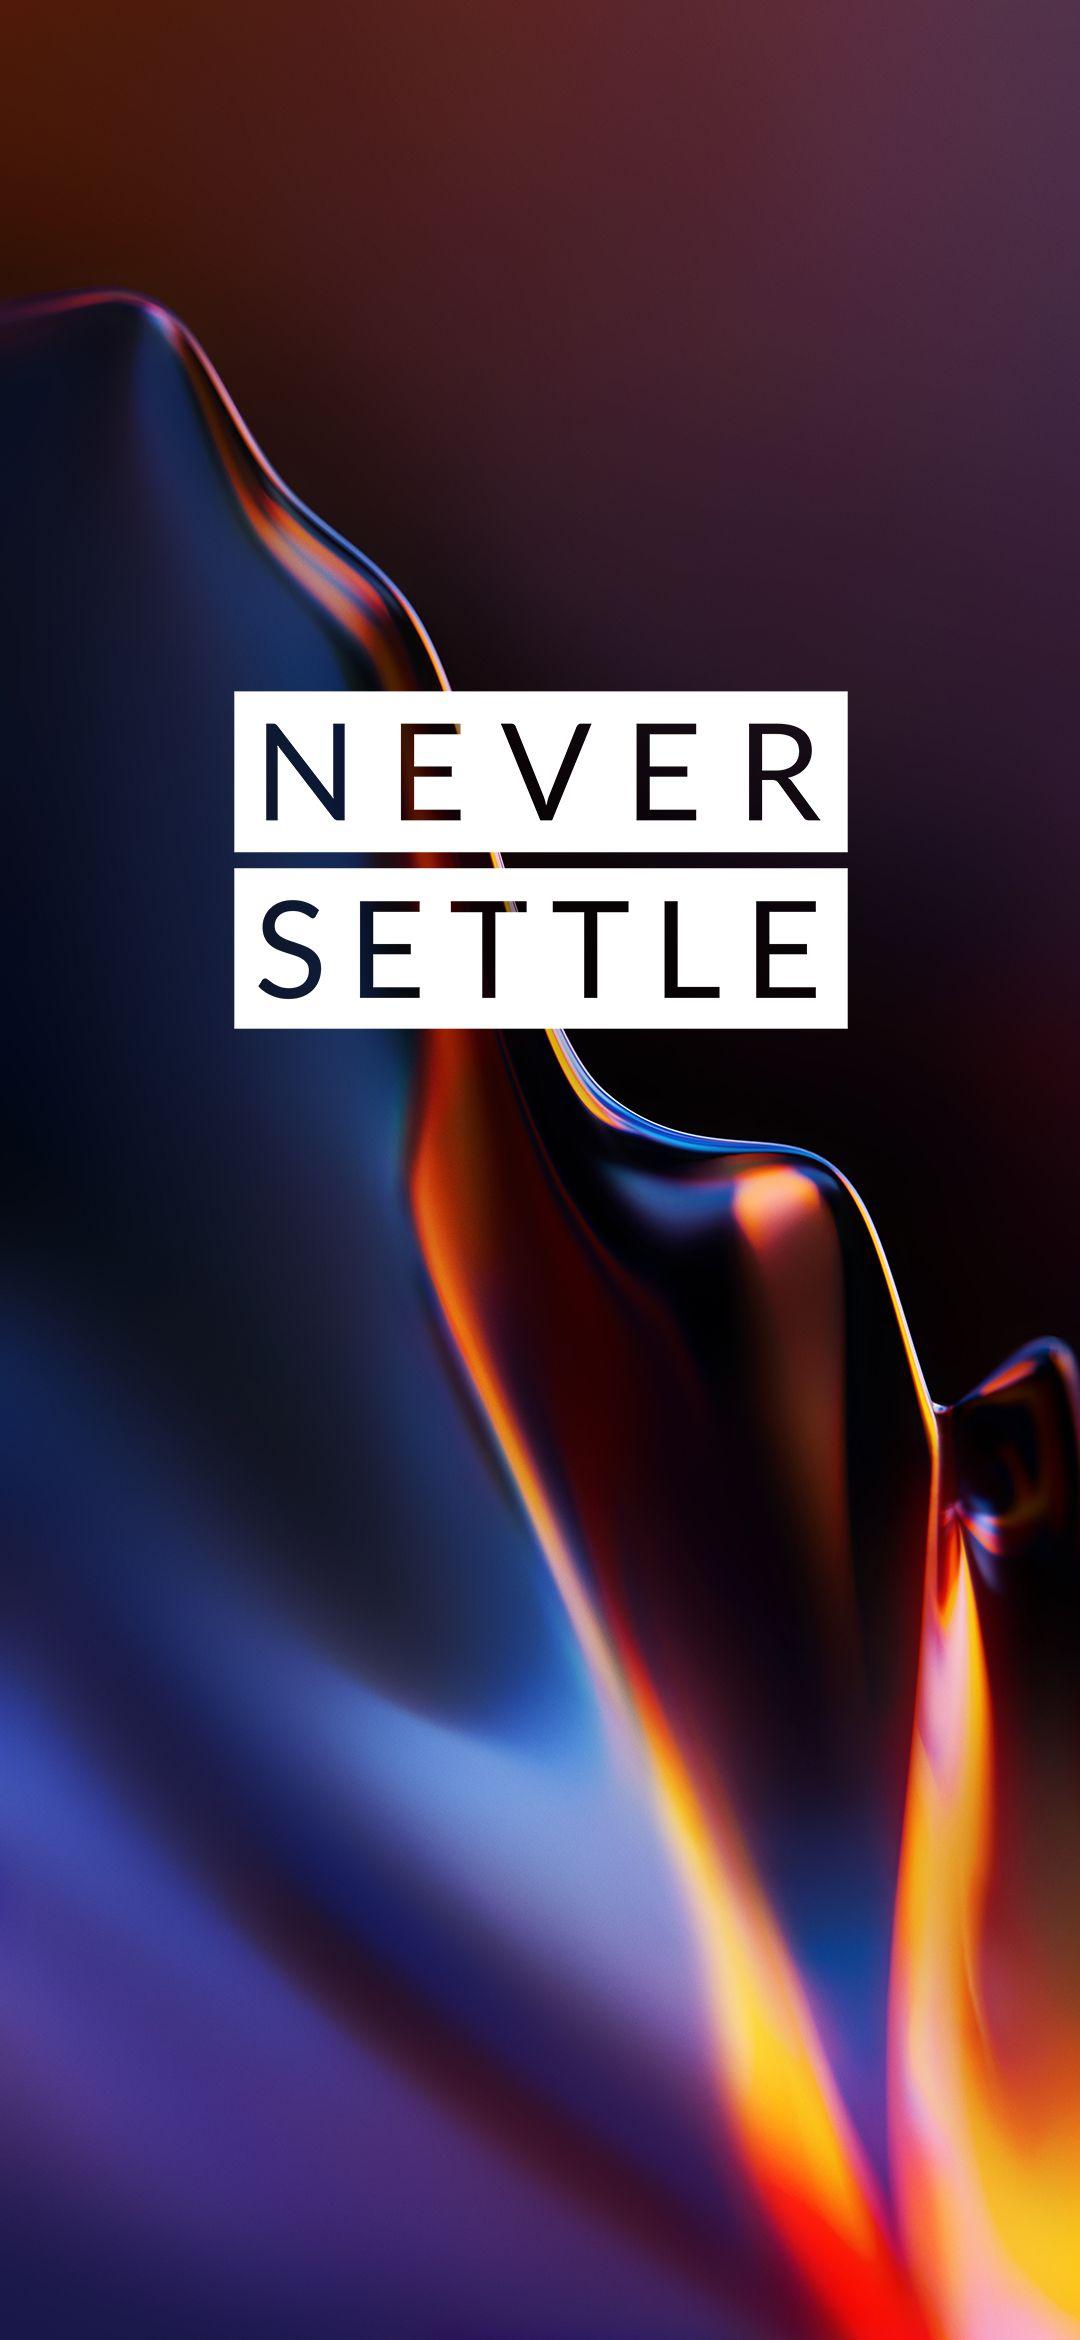 OnePlus 6T Never Settle Mobile Stock Wallpaper 2 /?p=30835. Never settle wallpaper, Oneplus wallpaper, Never settle